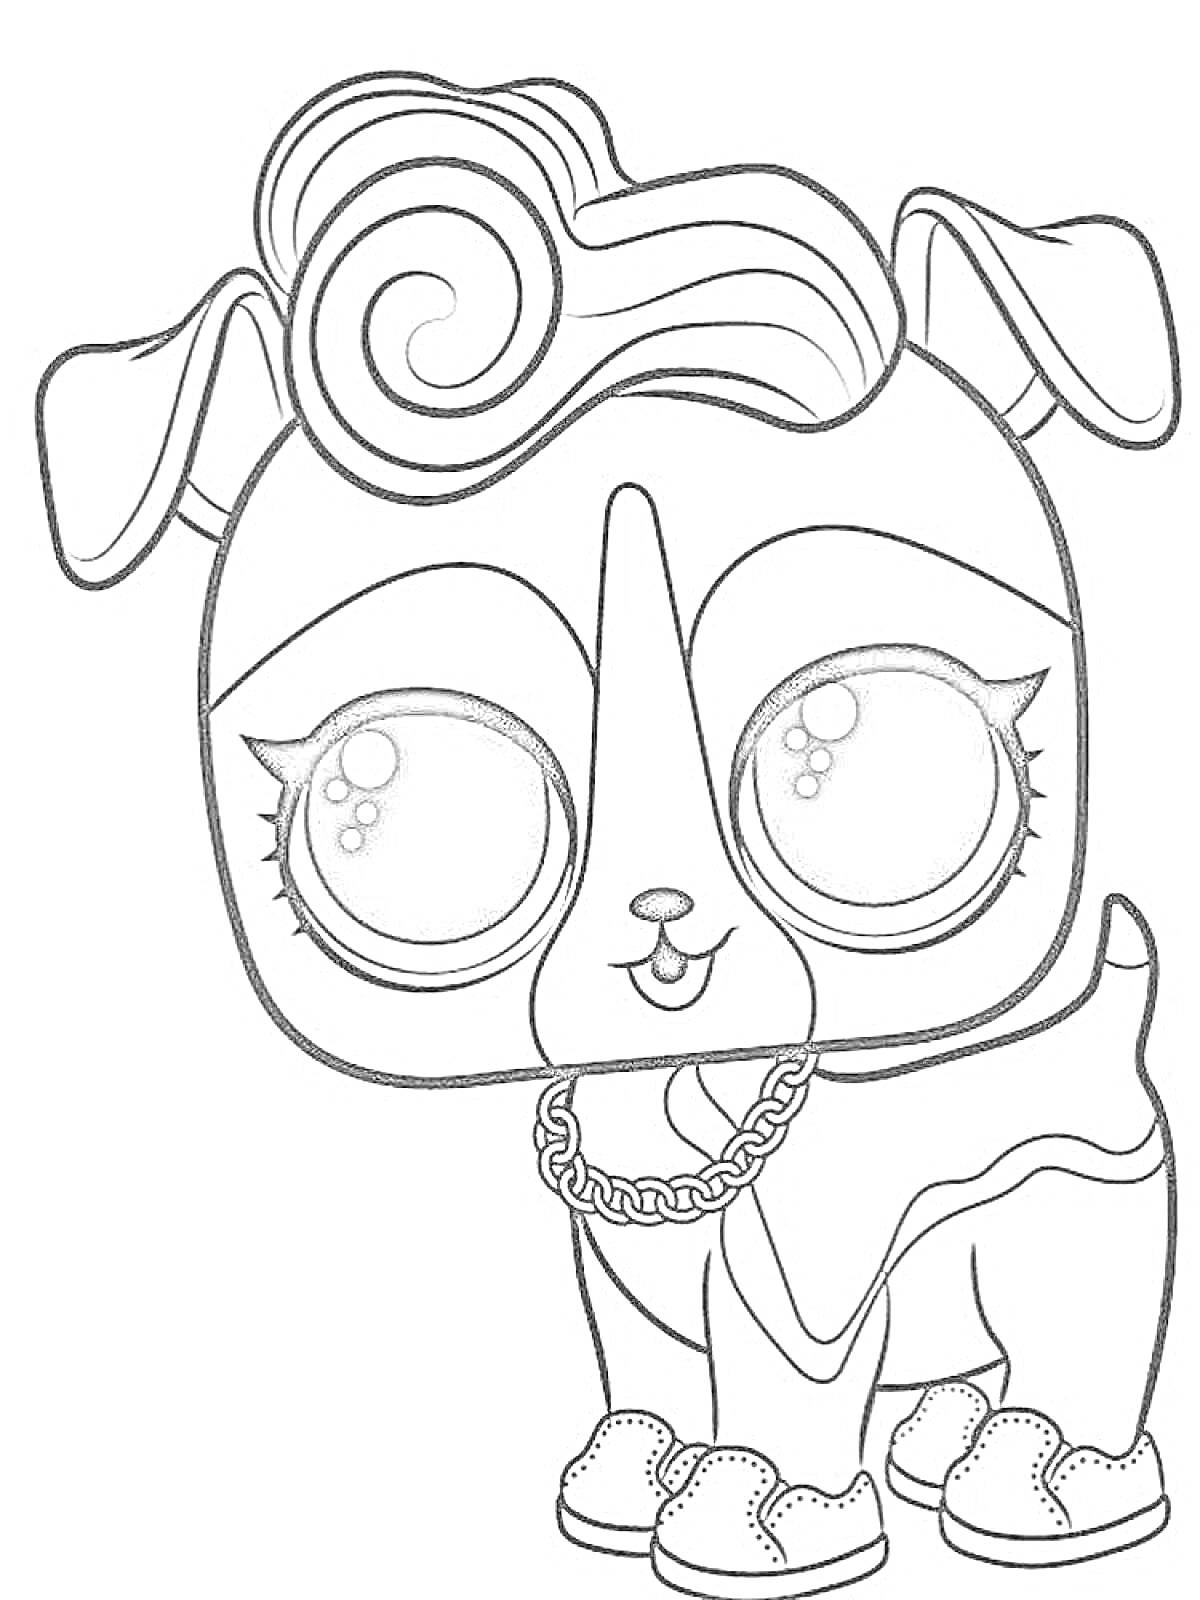 Раскраска Кукла ЛОЛ животное с крупными глазами, цепочкой и туфлями